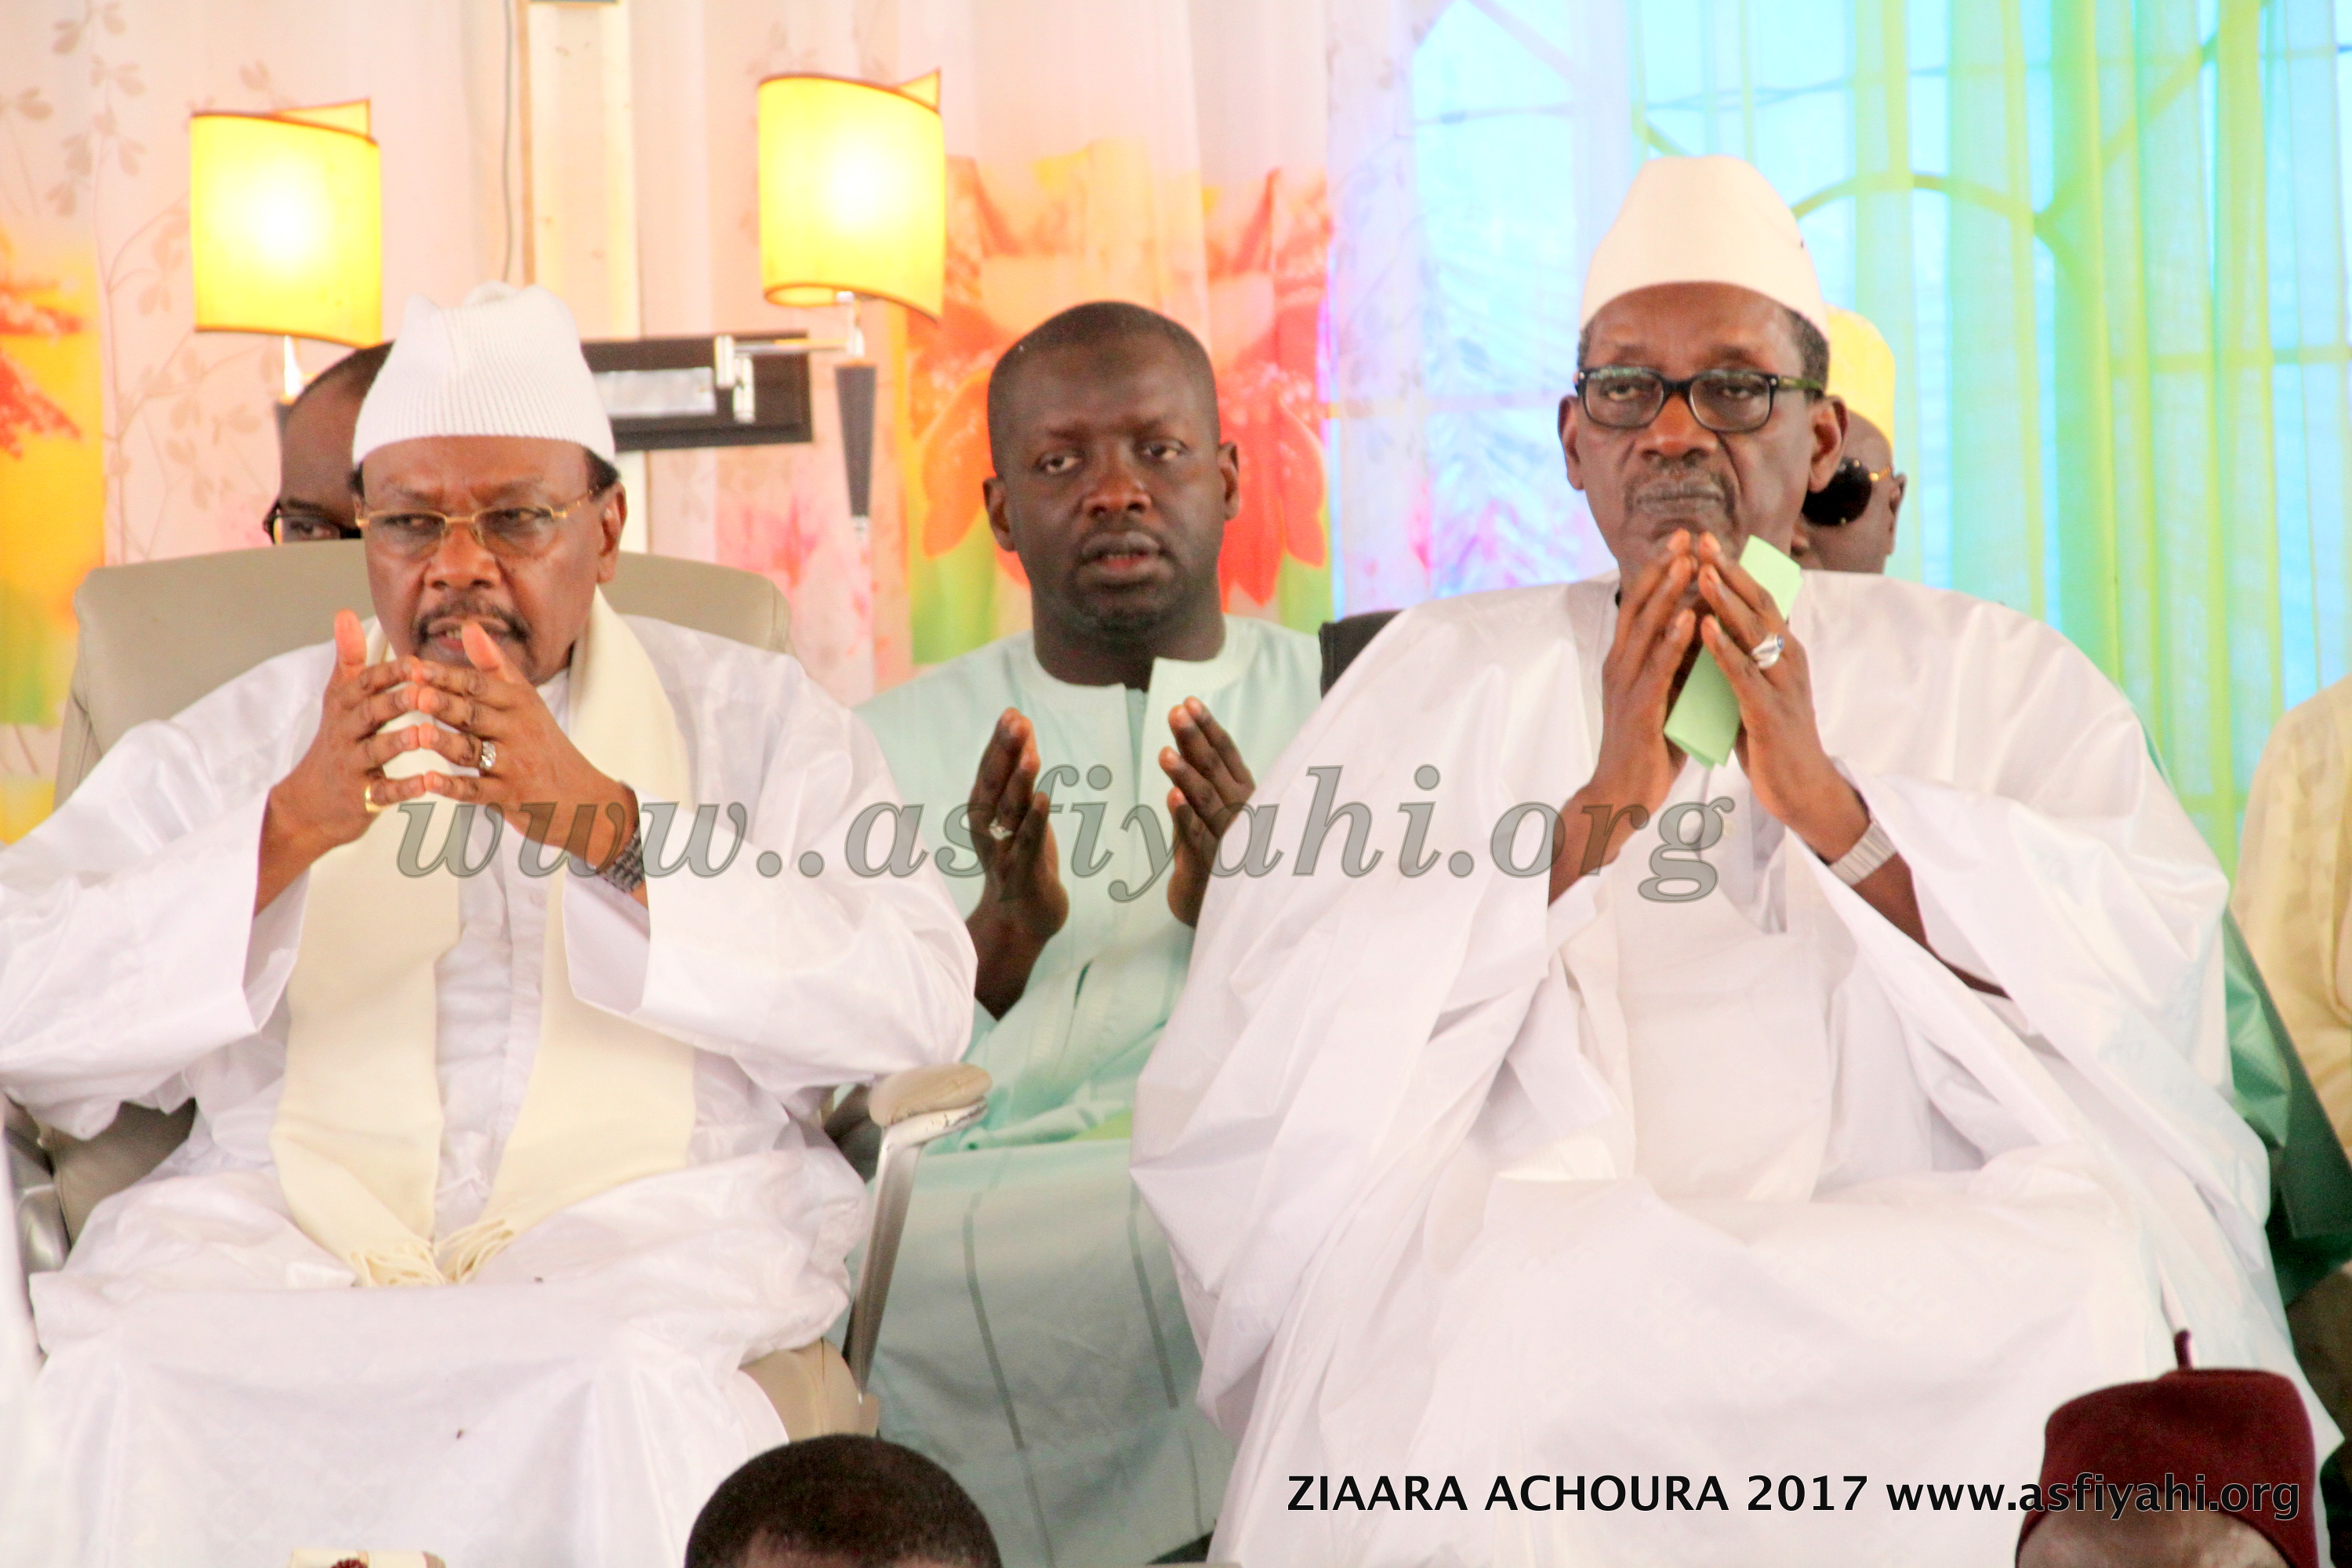 PHOTOS - ZIARRA ACHOURA 2017 À TIVAOUANE:  Serigne Abdoul Aziz Sy Al Amine, l'absent le plus présent 